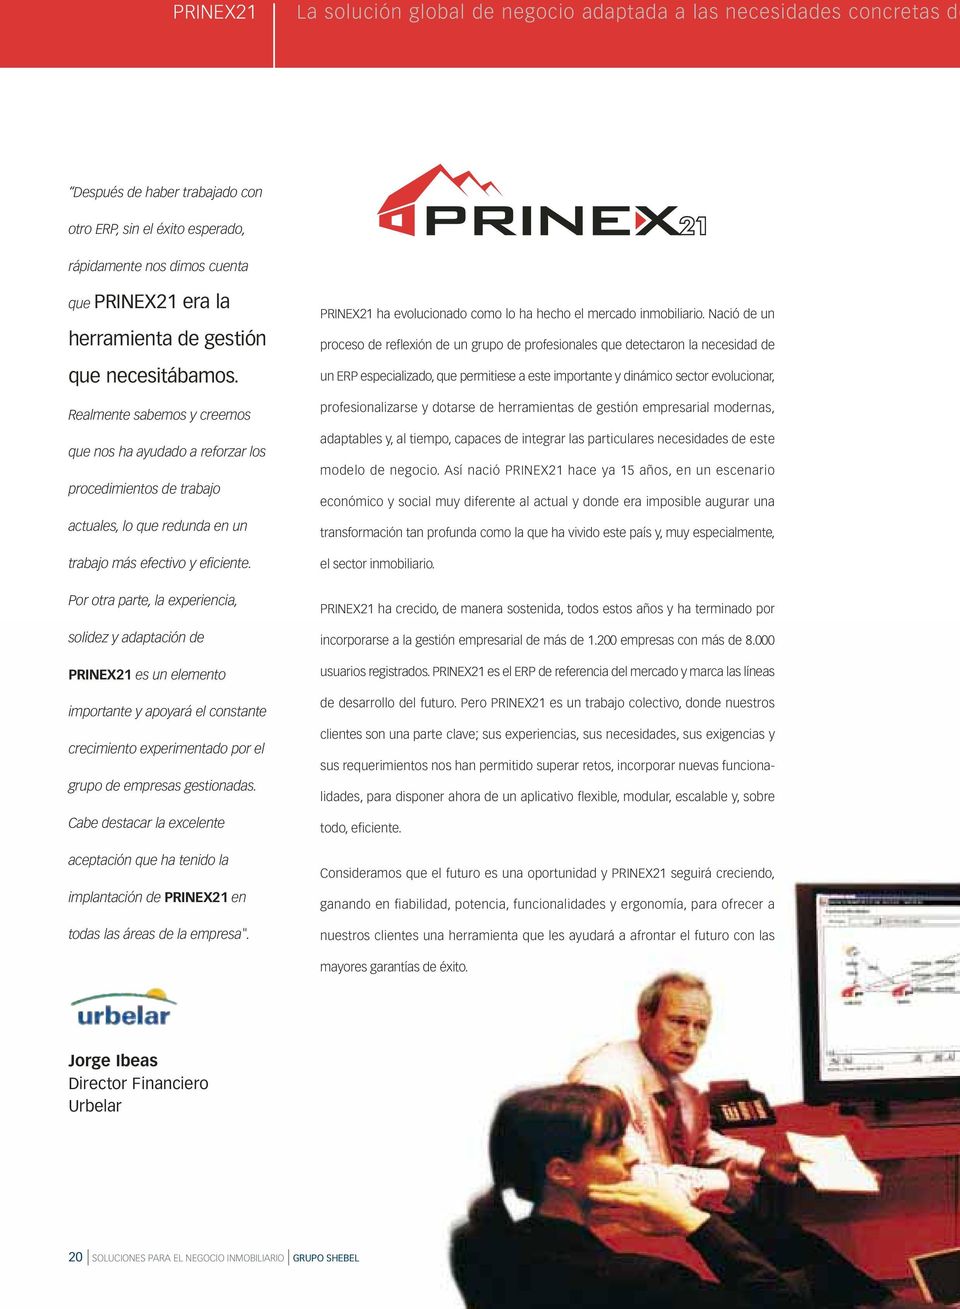 Por otra parte, la experiencia, solidez y adaptación de PRINEX21 es un elemento importante y apoyará el constante crecimiento experimentado por el grupo de empresas gestionadas.